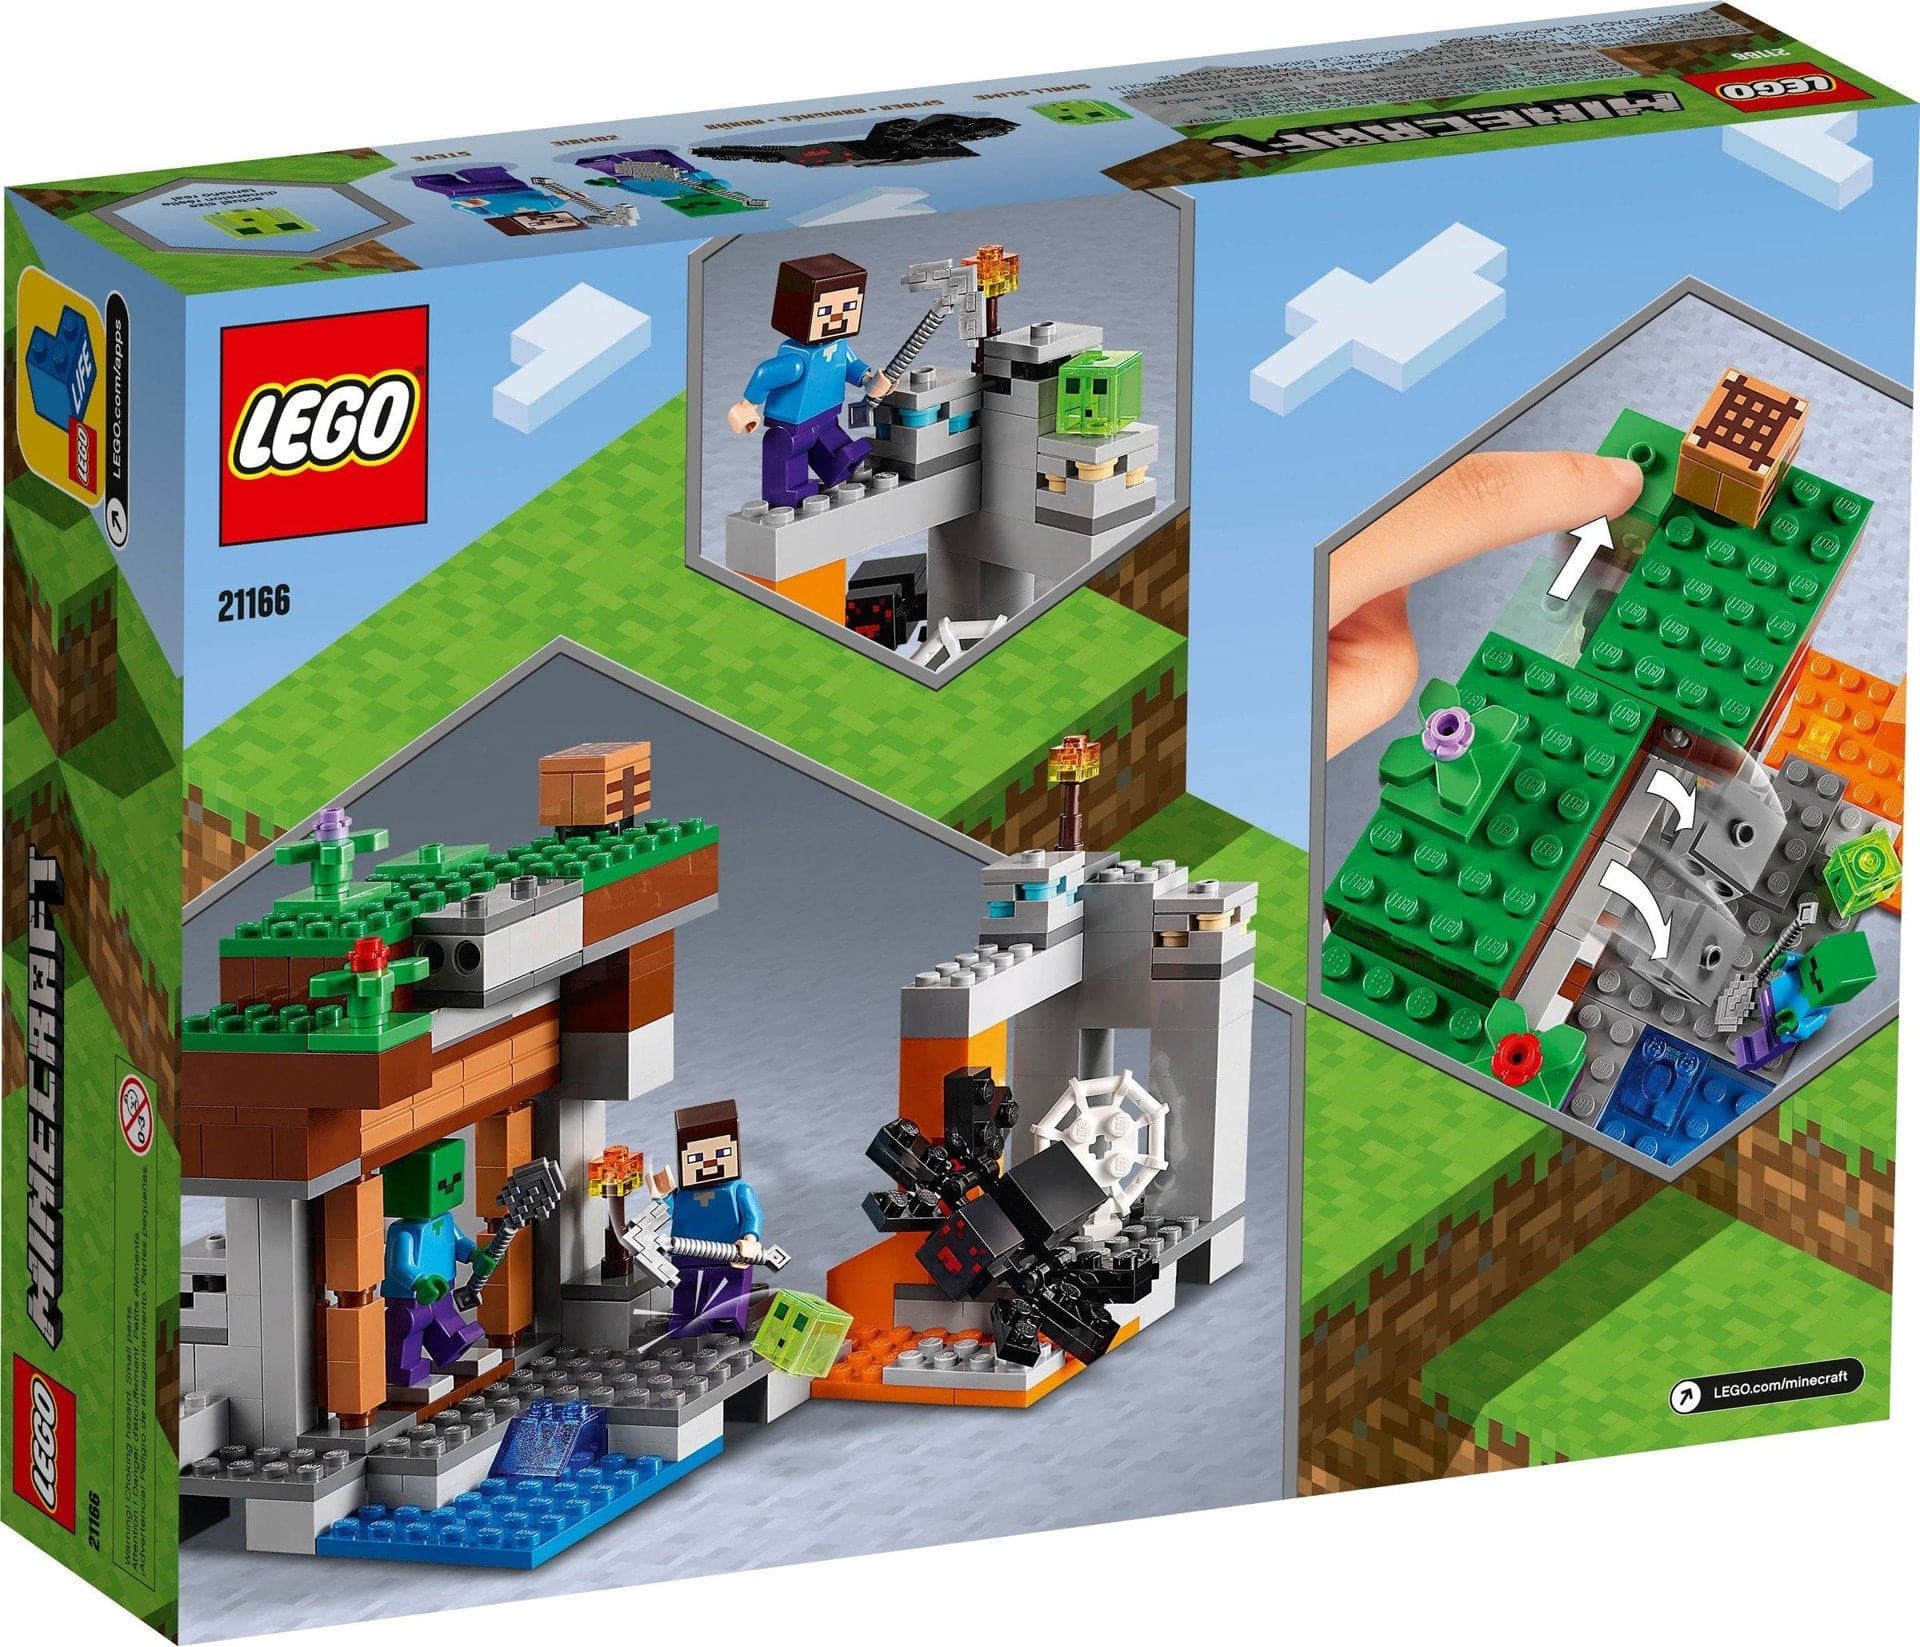 LEGO Minecraft - The "Abandoned" Mine (21166)